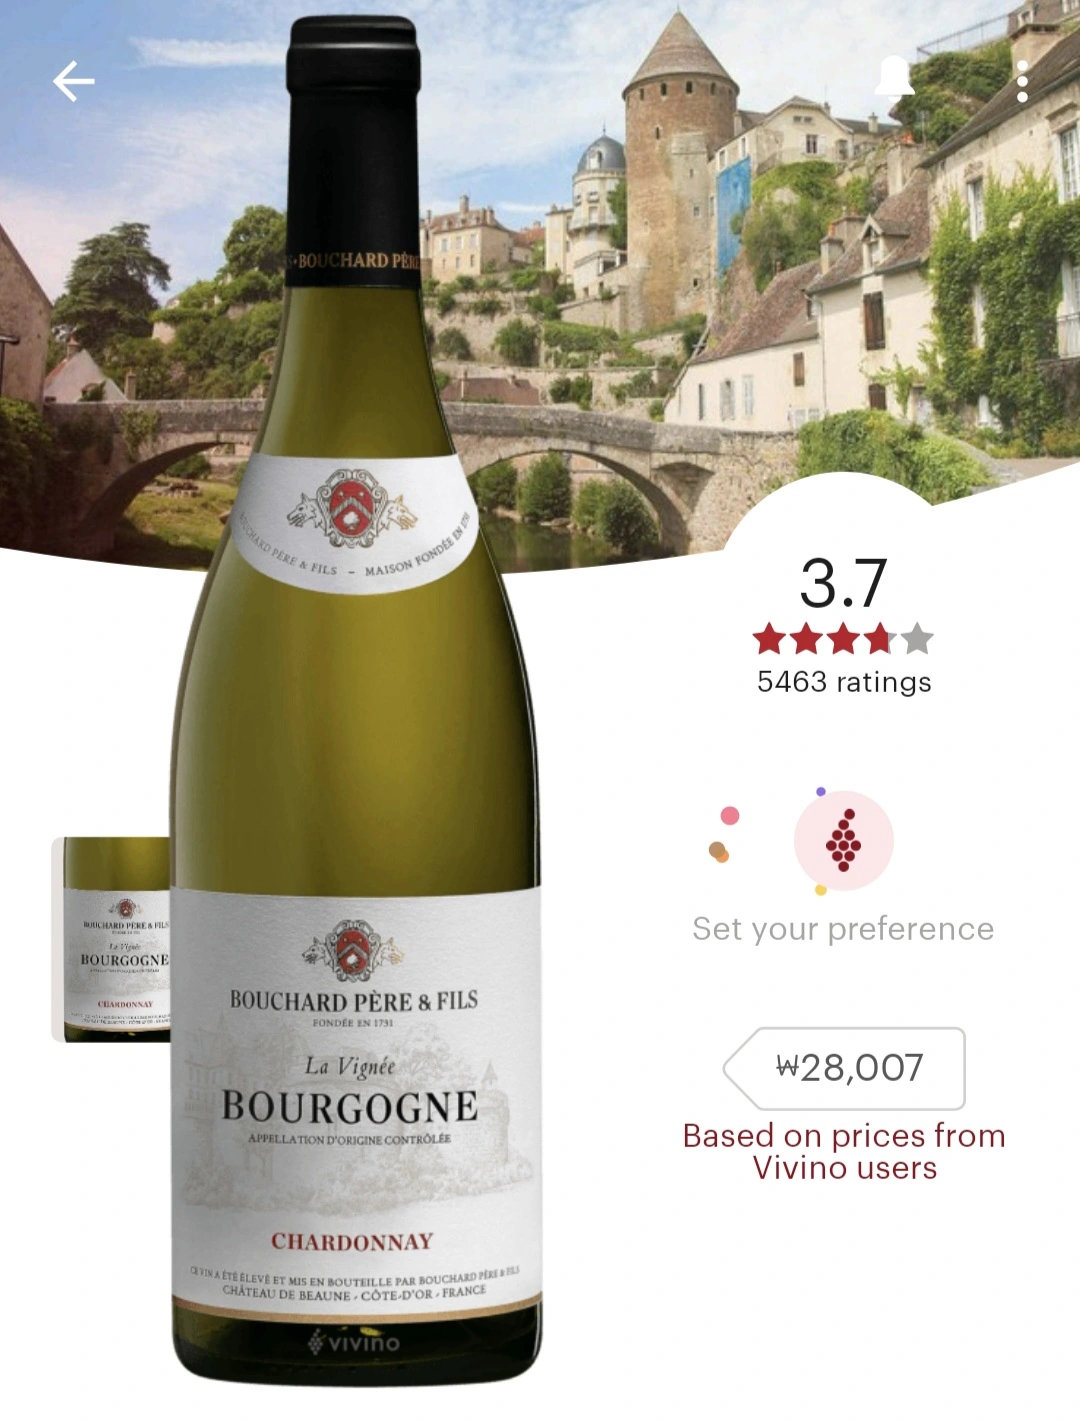 부샤르 뻬레 에 피스 부르고뉴 샤르도네(Bouchard Pere & Fils Bourgogne Chardonnay) 비비노 평점